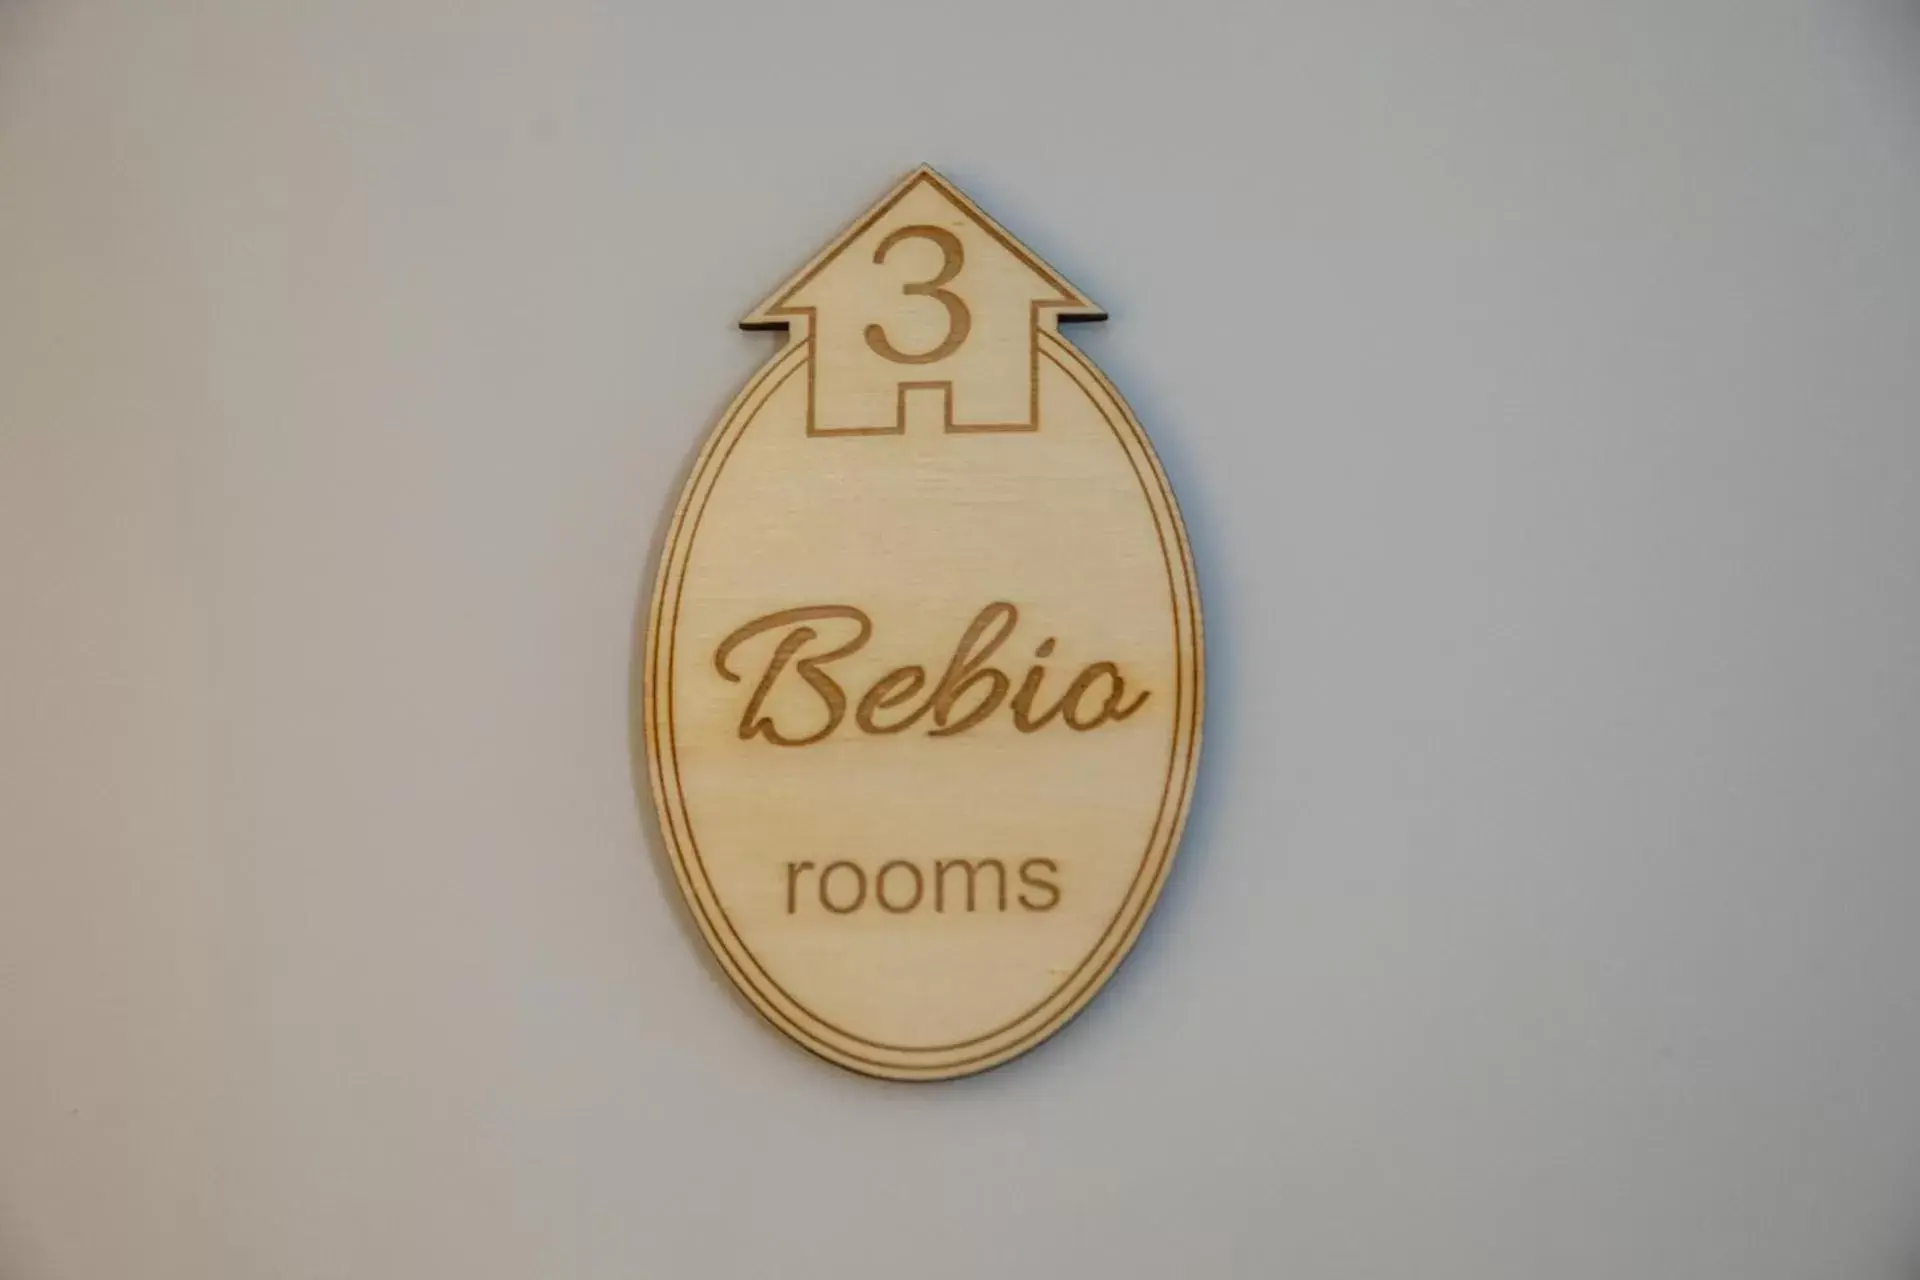 Bebio Rooms